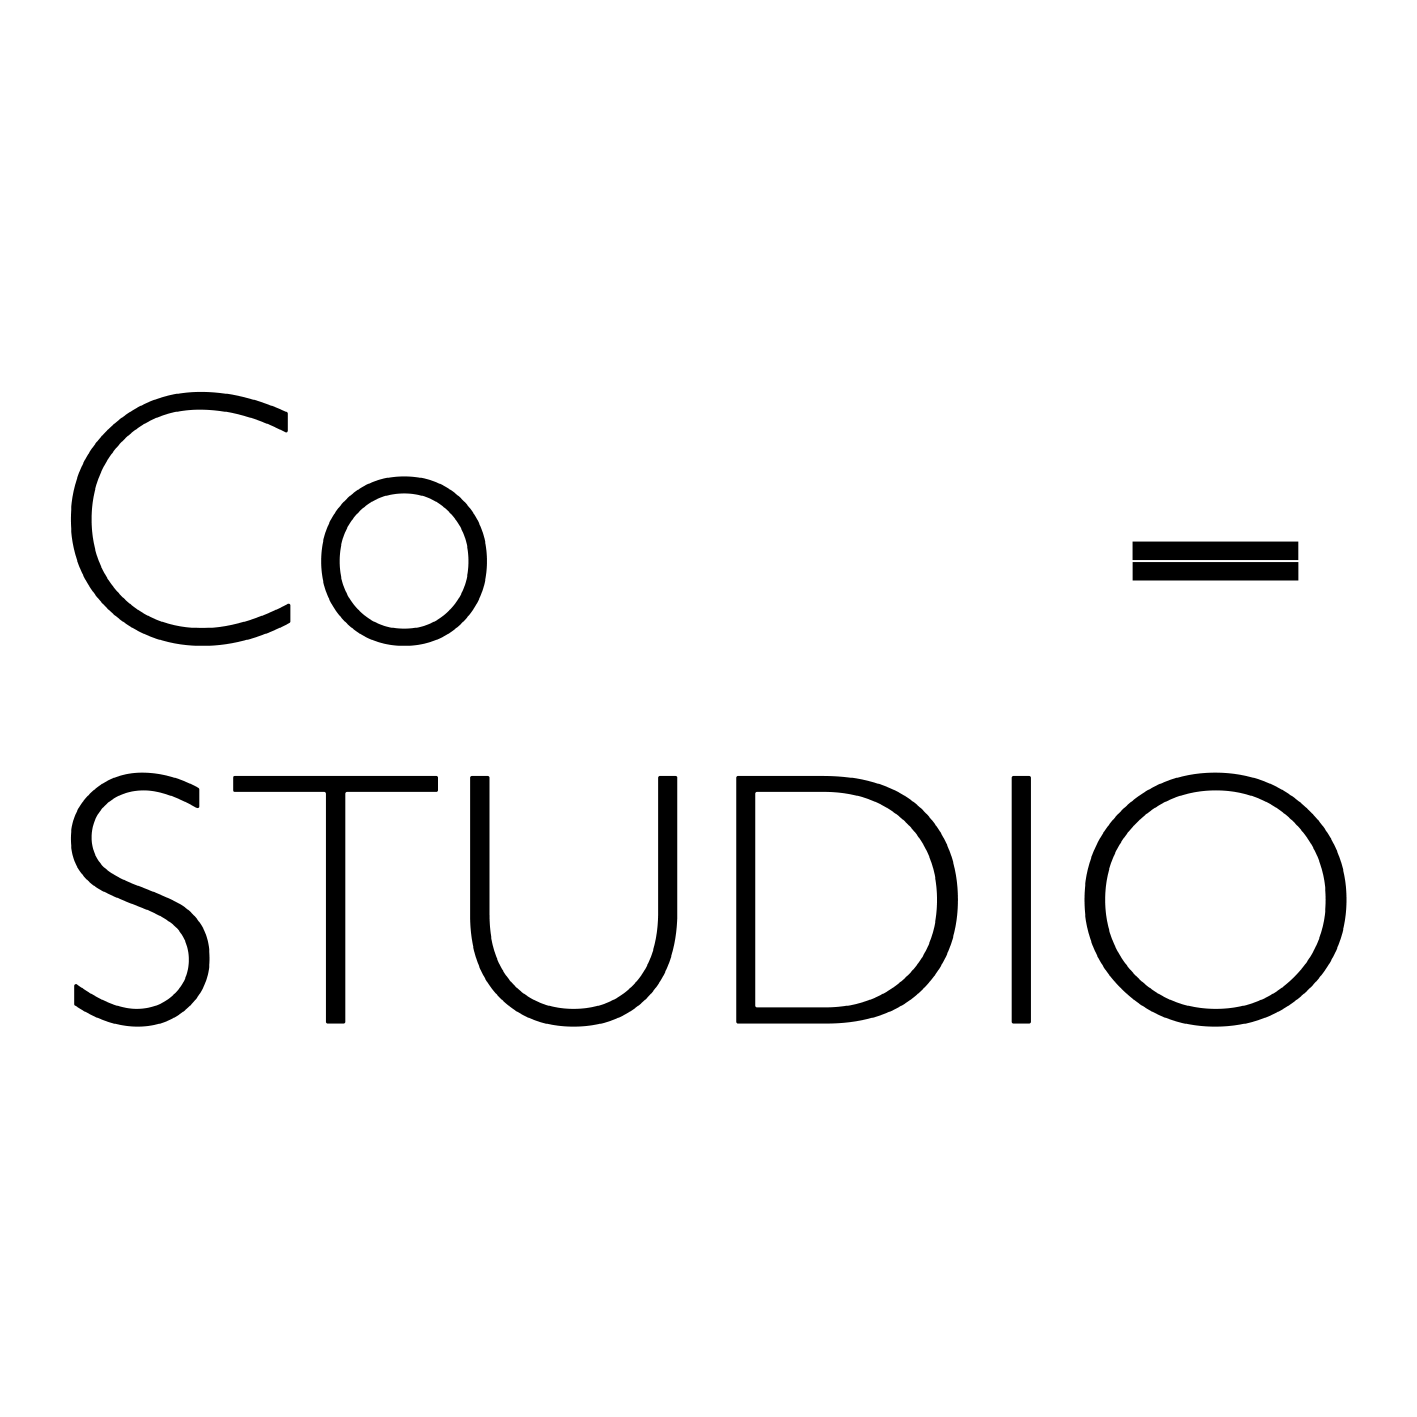 Co-Studio KK